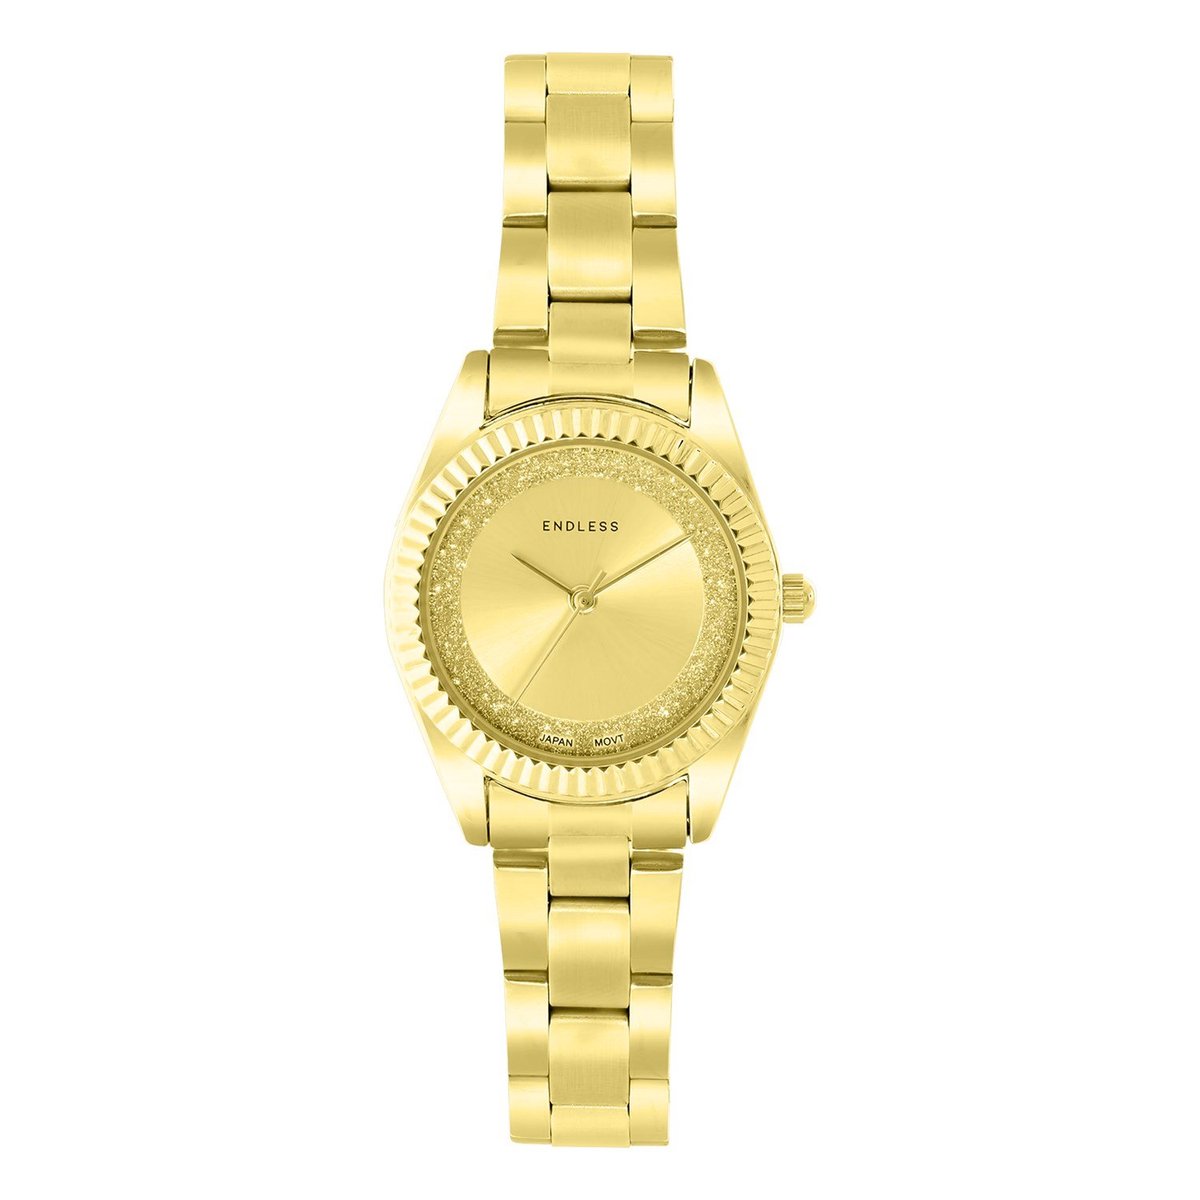 Lucardi Dames Regal dames horloge goudkleurig alloy band - Horloge - Staal - Goud - 28 mm